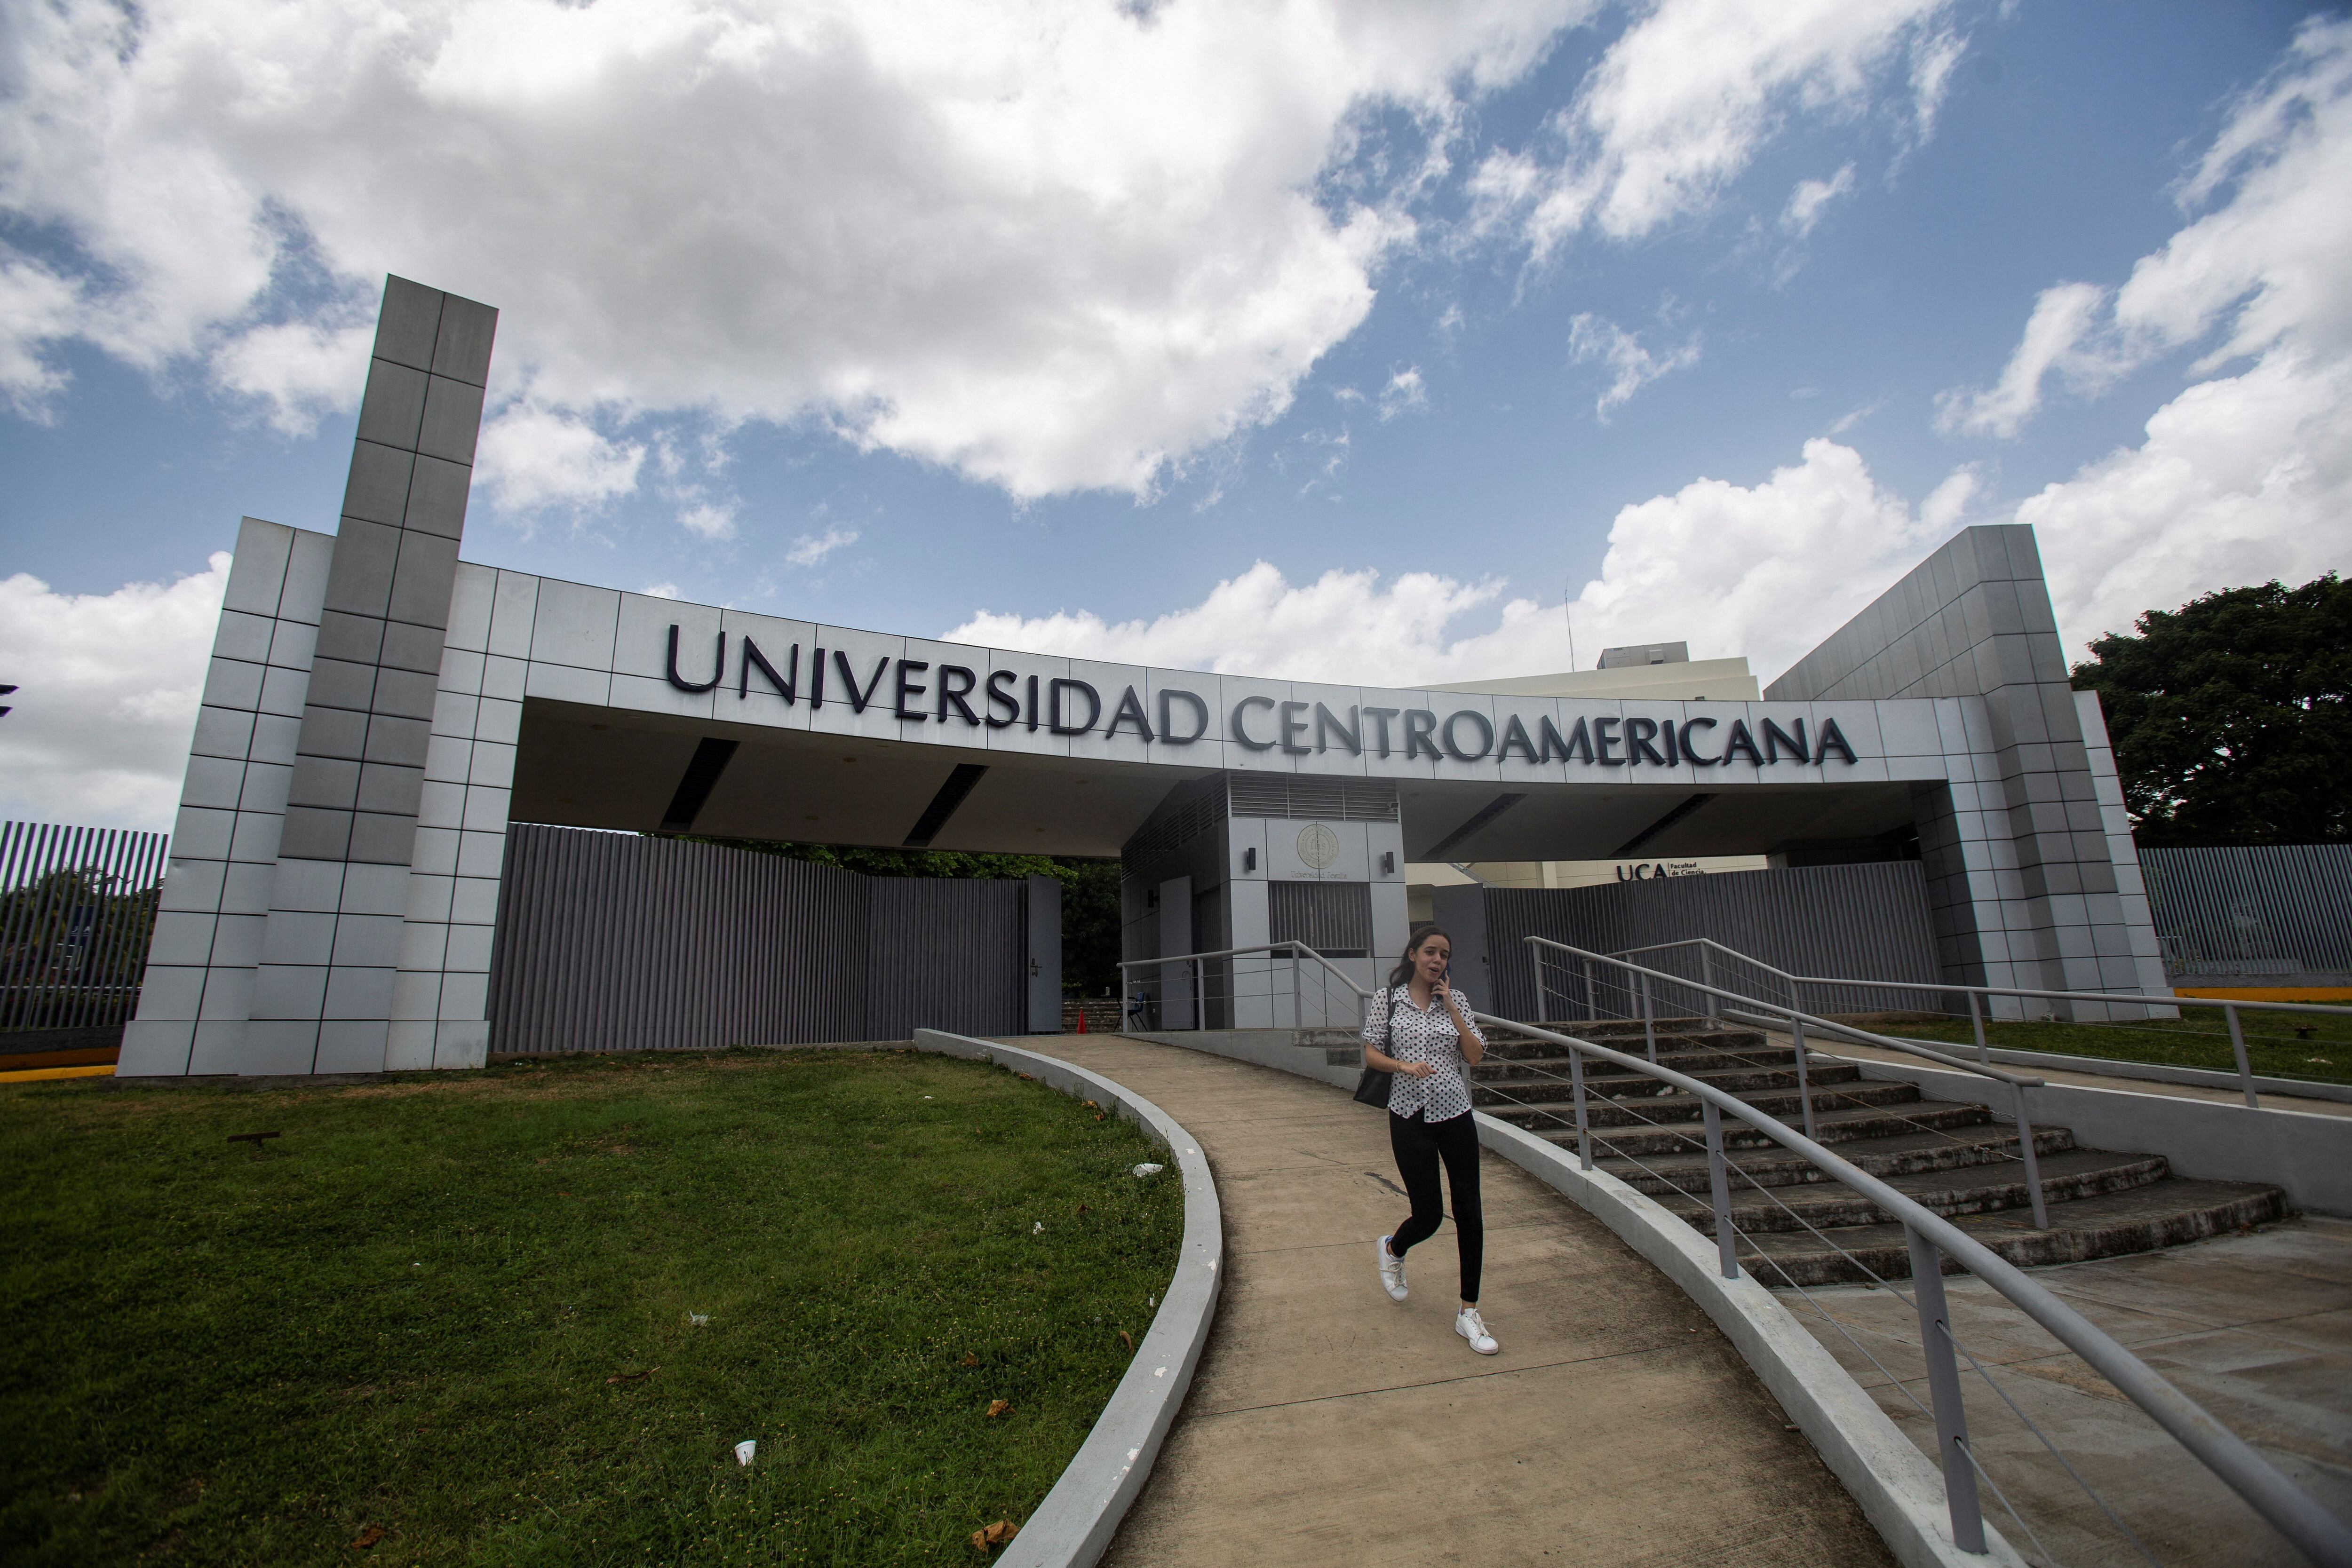 La Universidad Centroamericana (UCA), una institución privada dirigida por los jesuitas, fue expropiada por el régimen sandinista en Nicaragua (REUTERS)